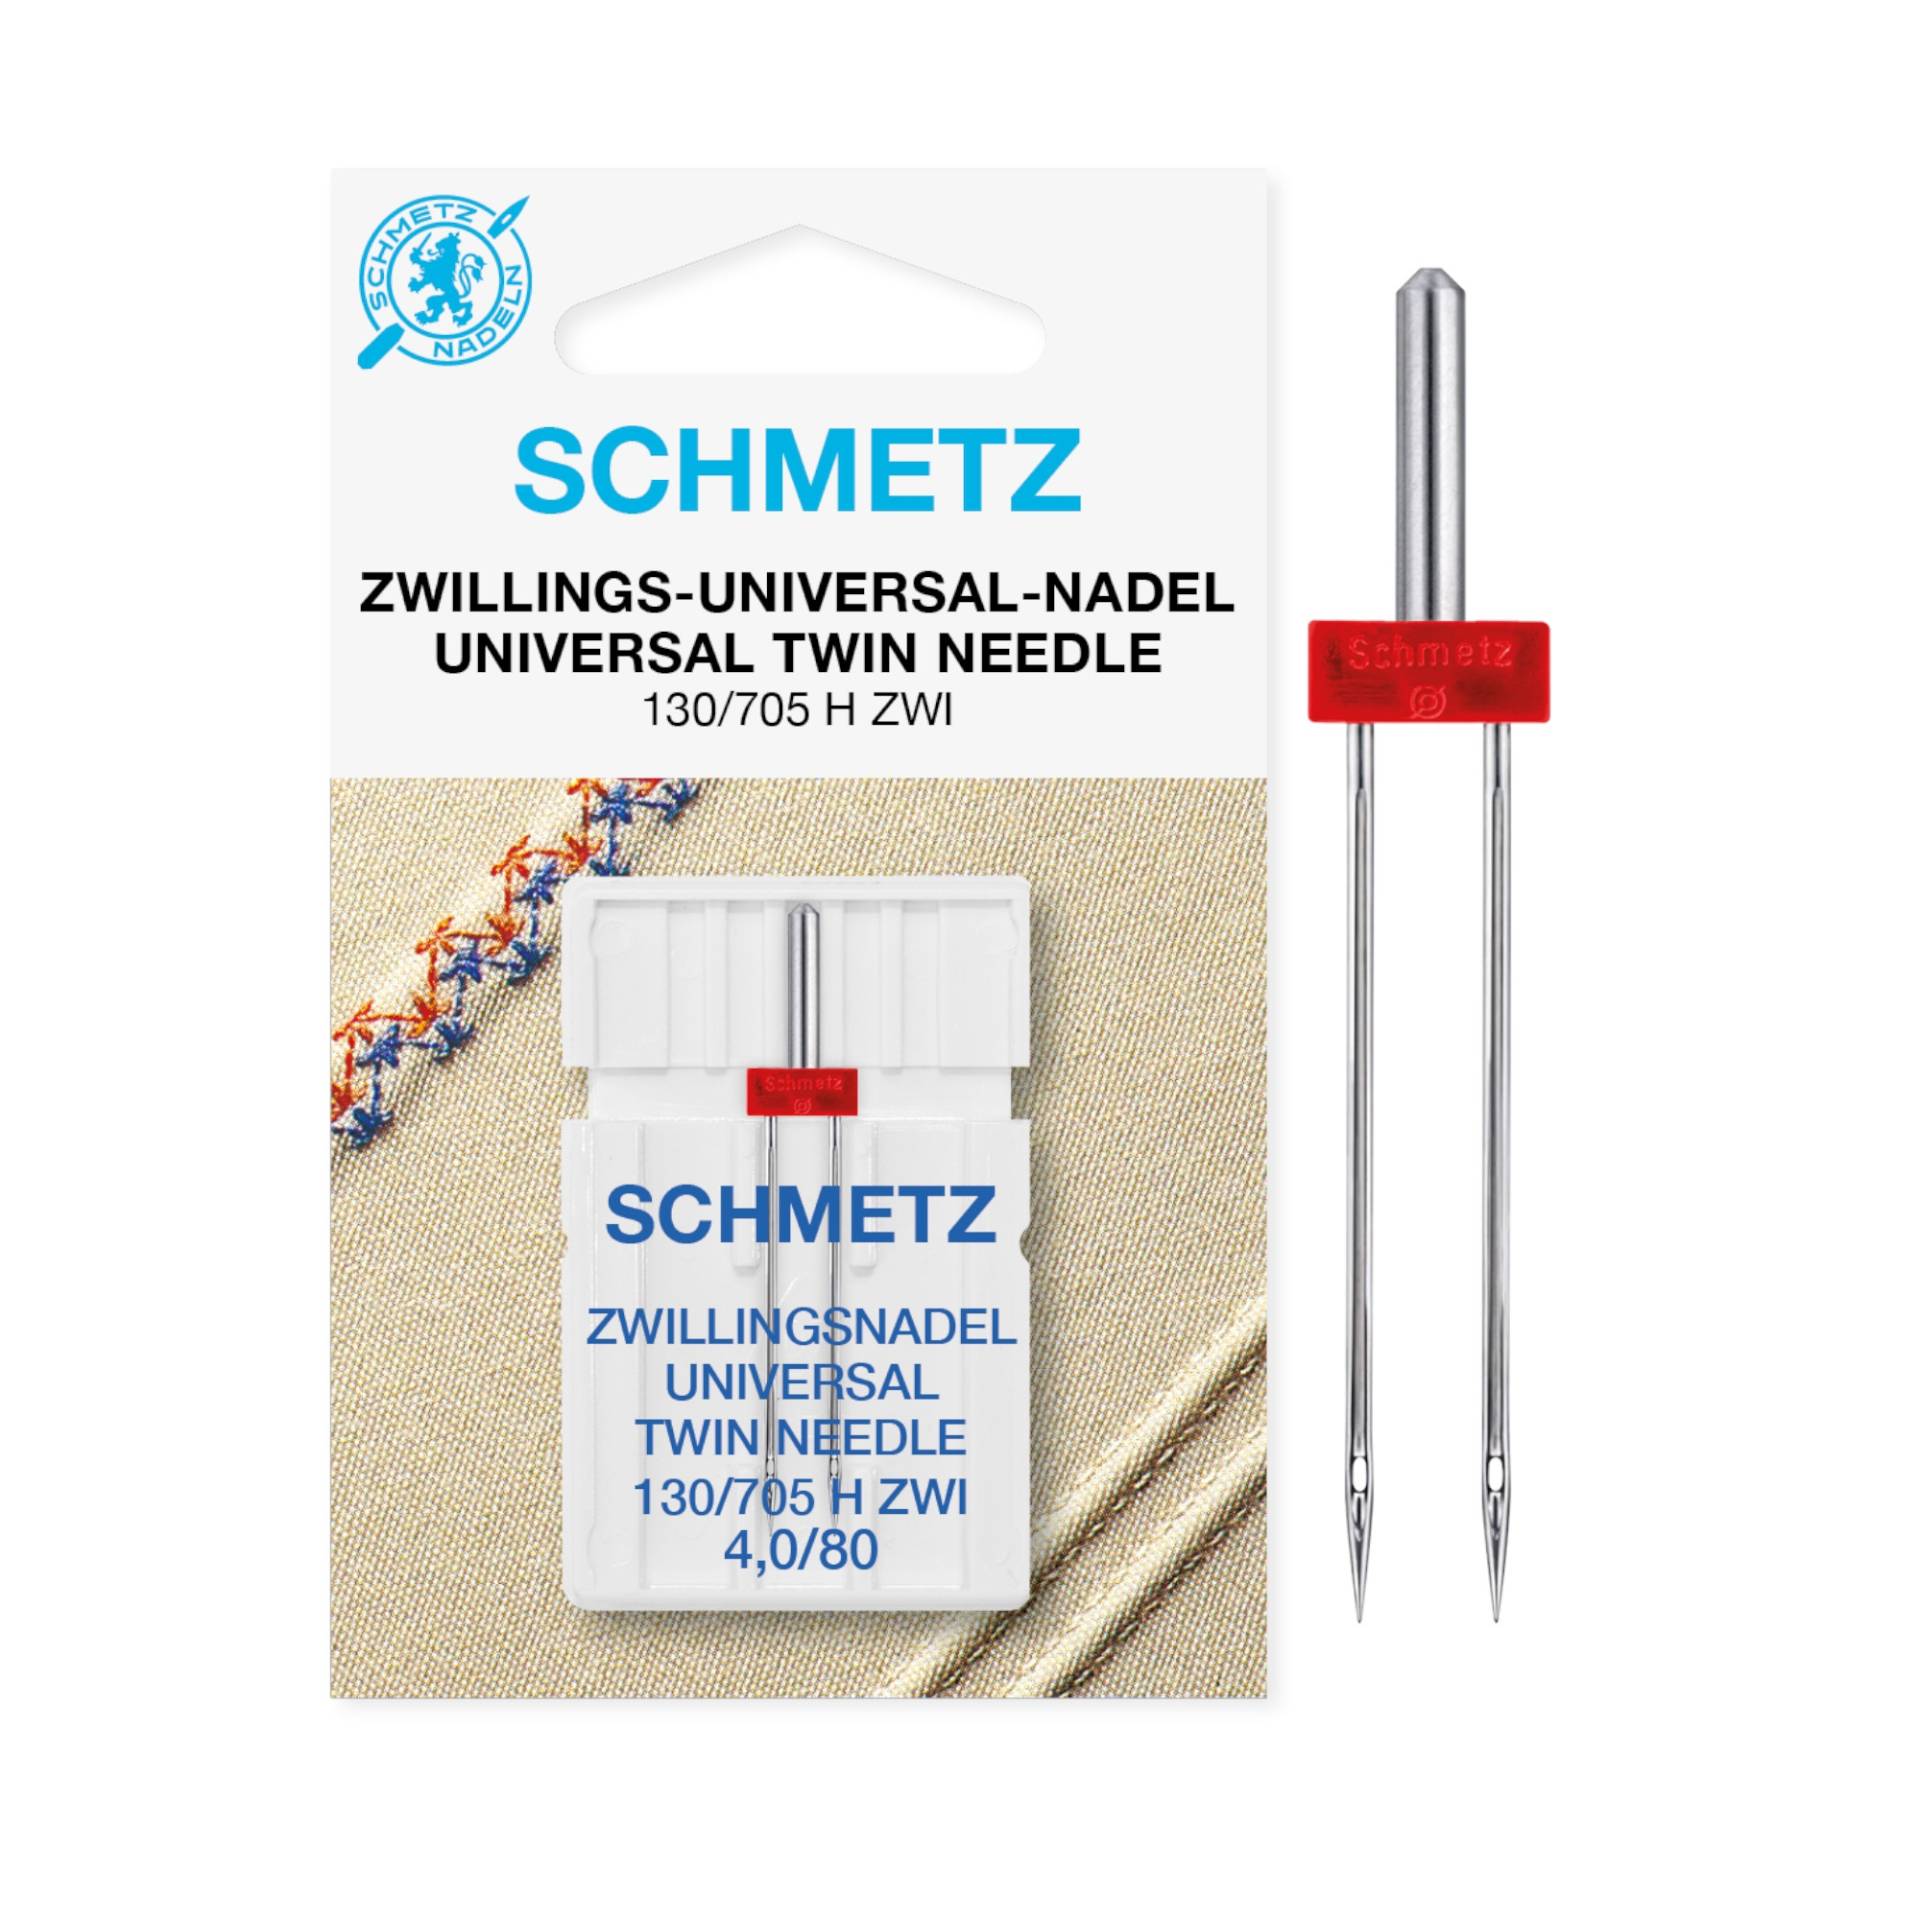 Schmetz Doppelnadel / Zwillingnadel 130/705 H ZWI Universal 4,0/80 von Stoffe Hemmers